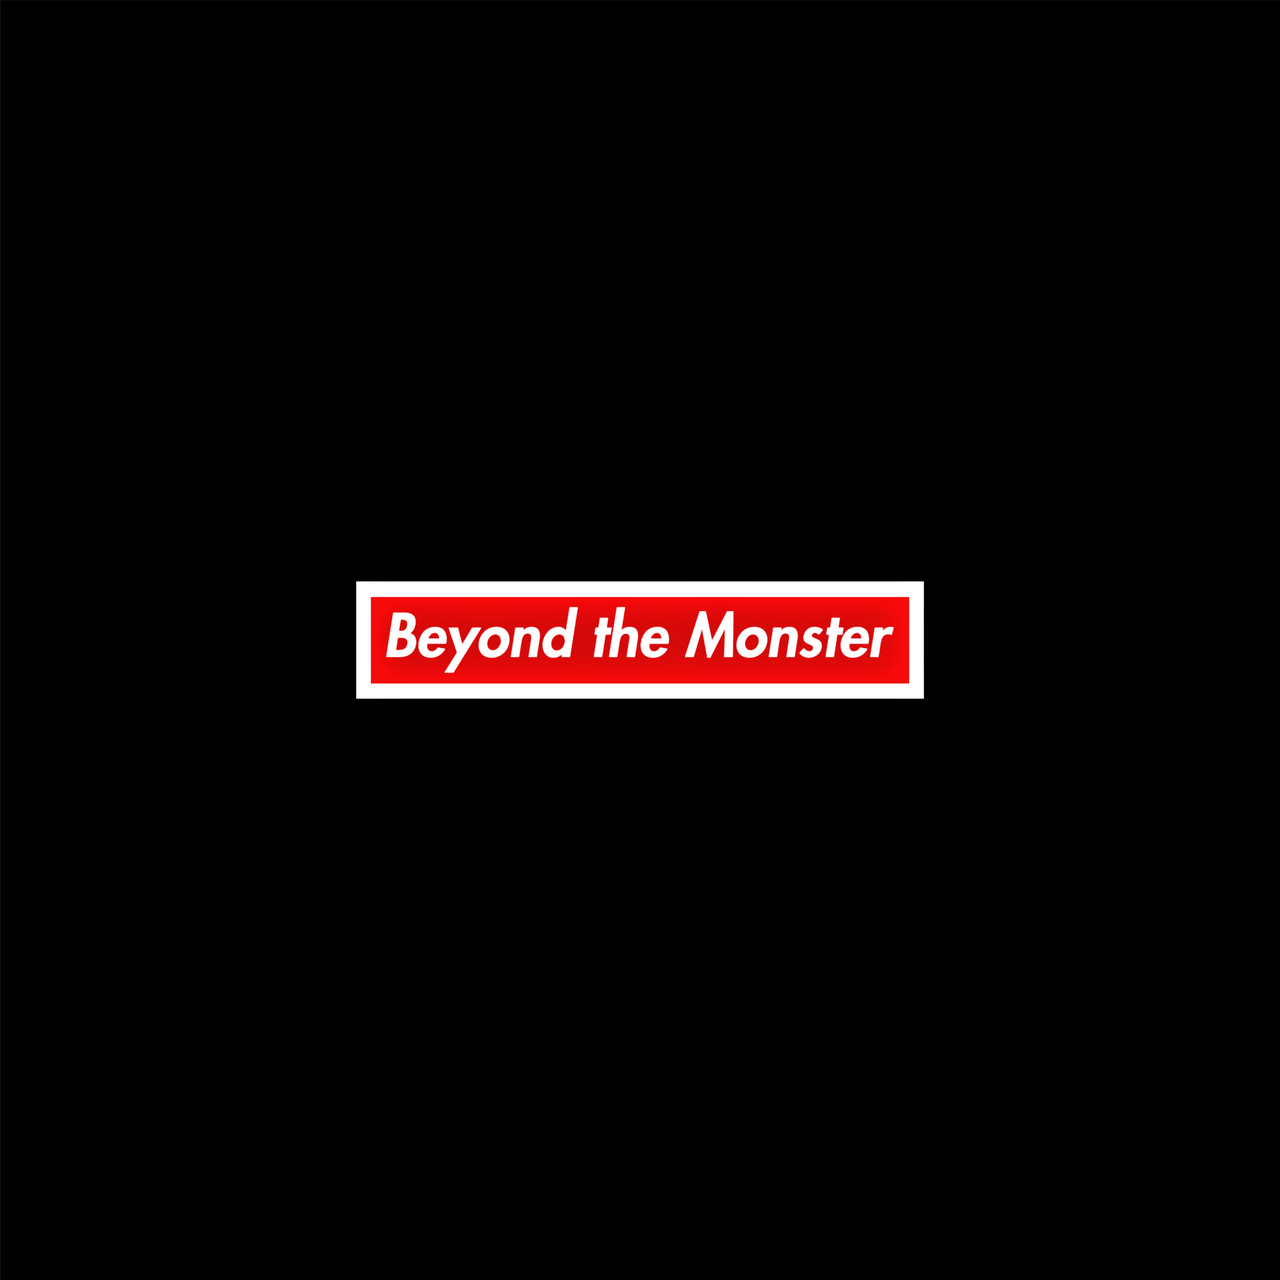 Artwork for Beyond the Monster